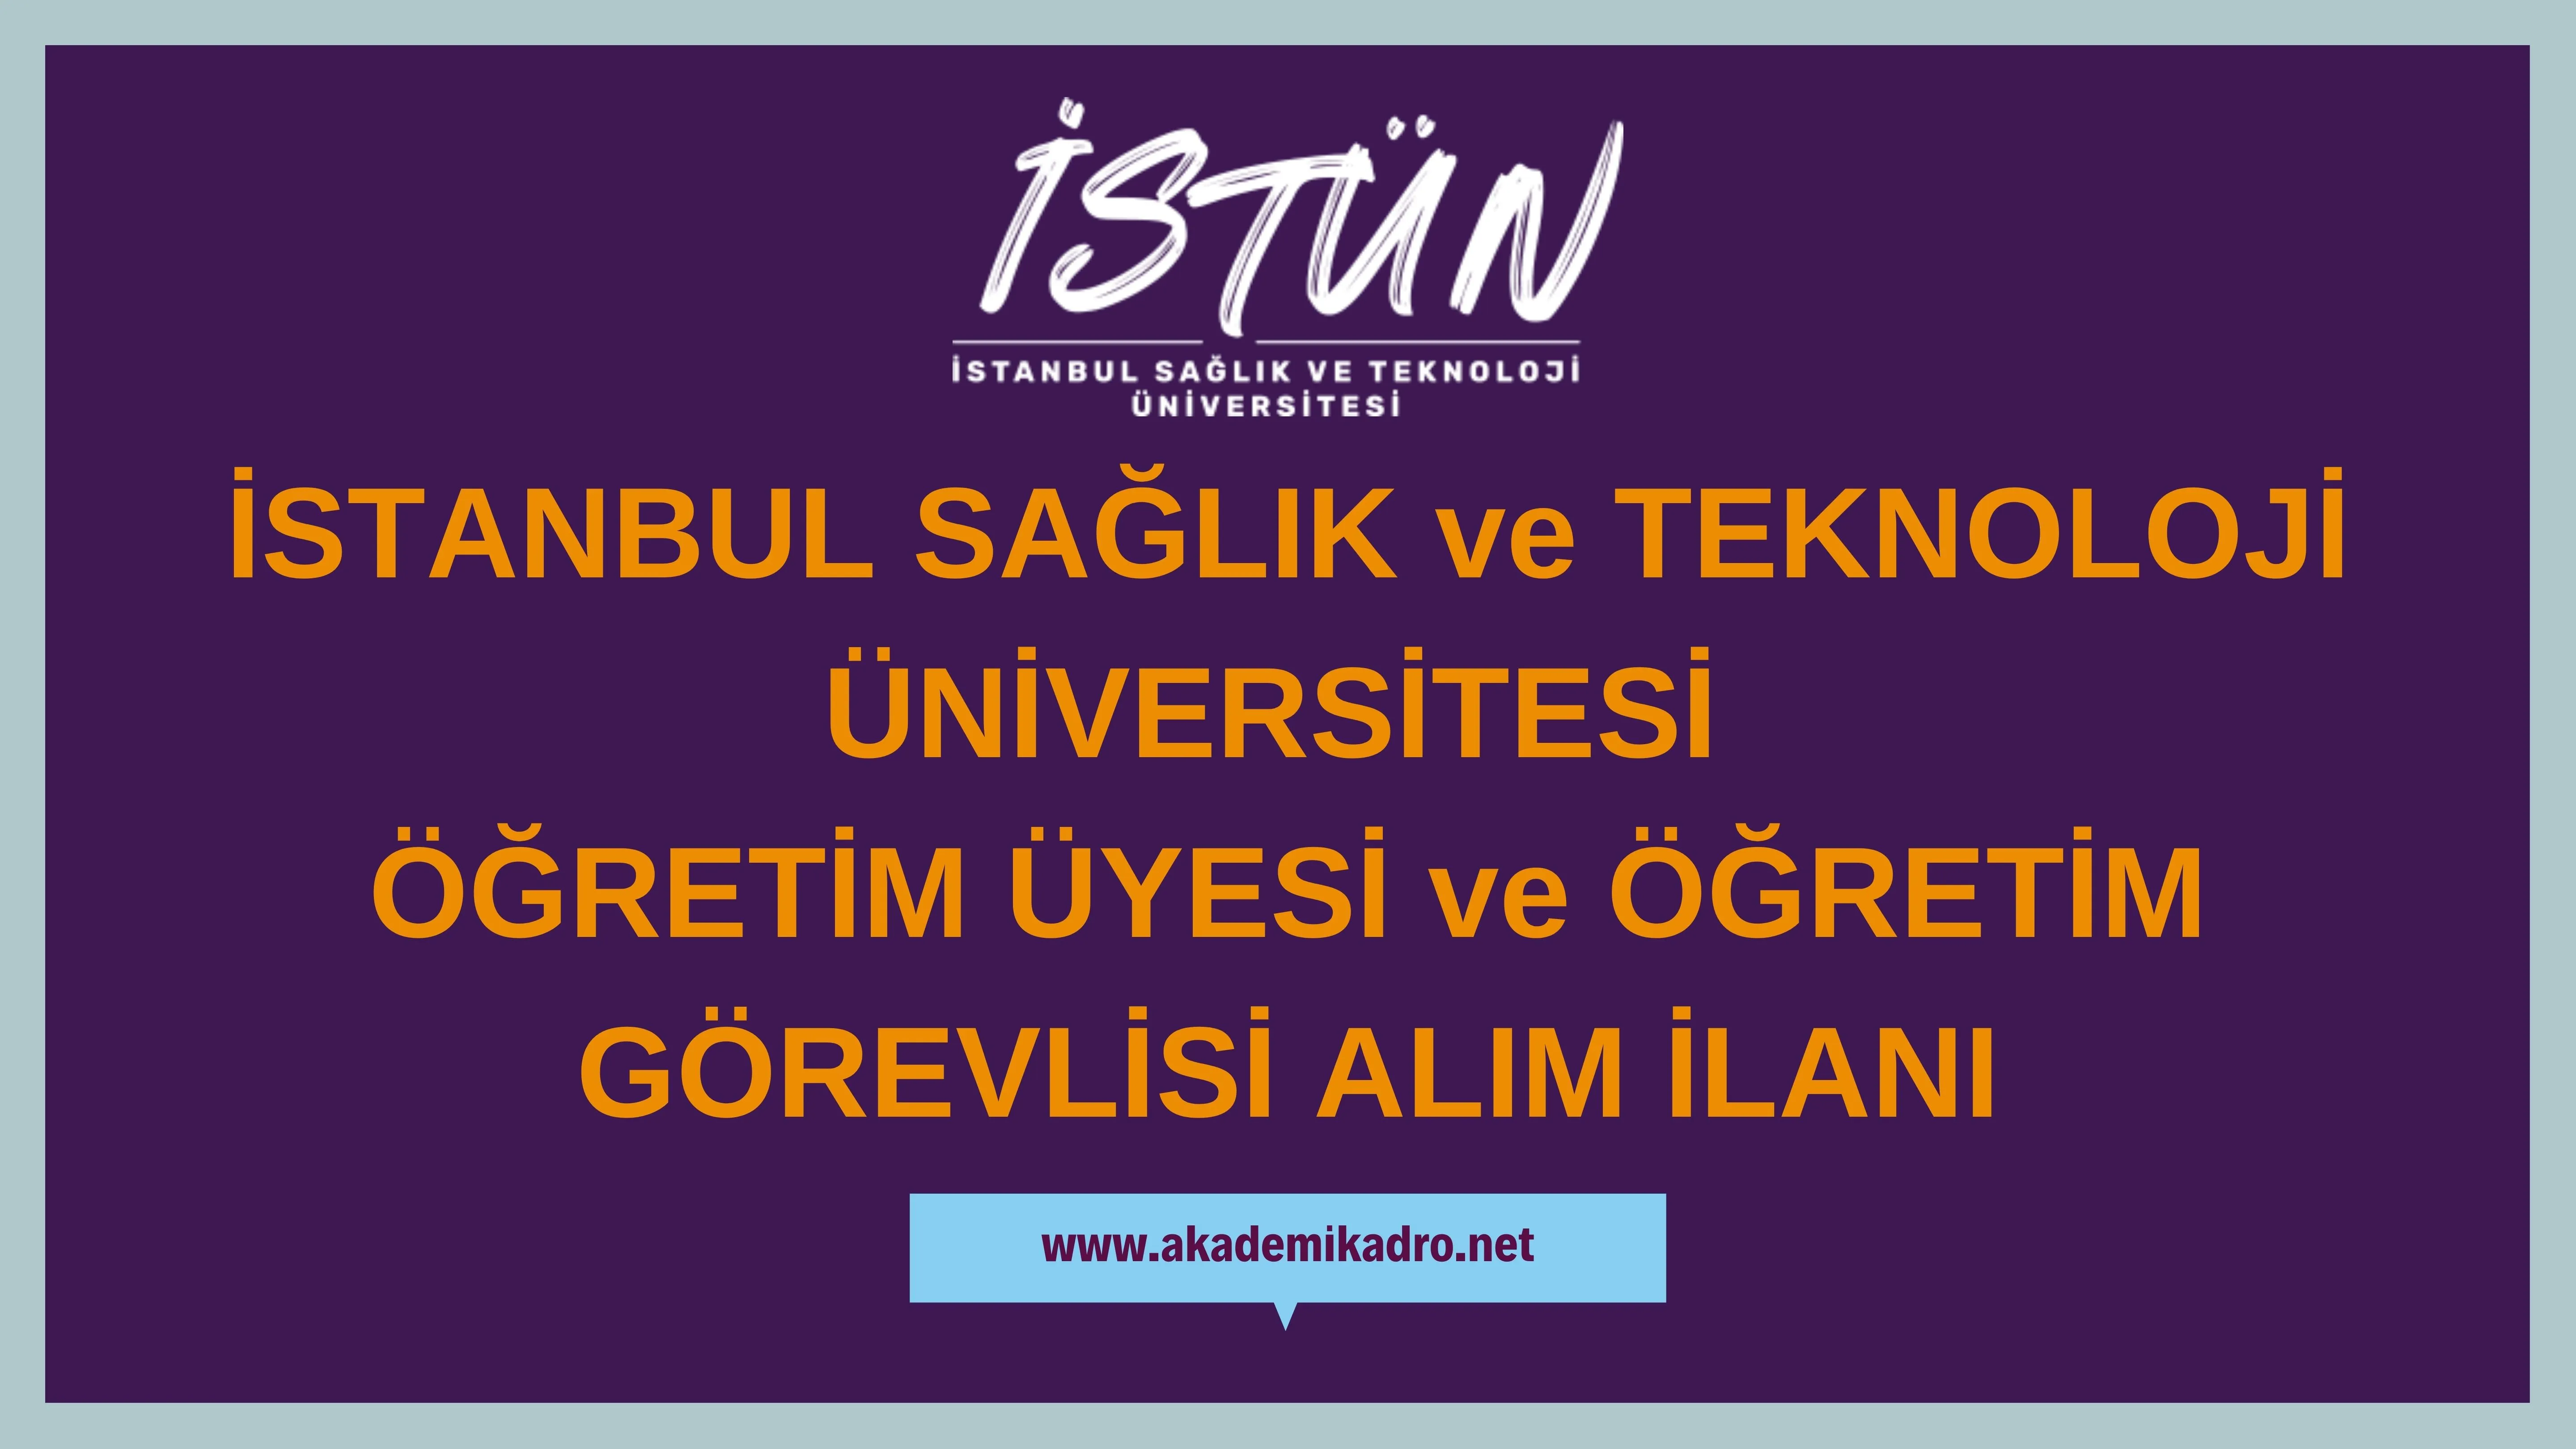 İstanbul Sağlık ve Teknoloji Üniversitesi 11 Araştırma Görevlisi, 3 öğretim görevlisi ve 88 öğretim üyesi alacaktır.